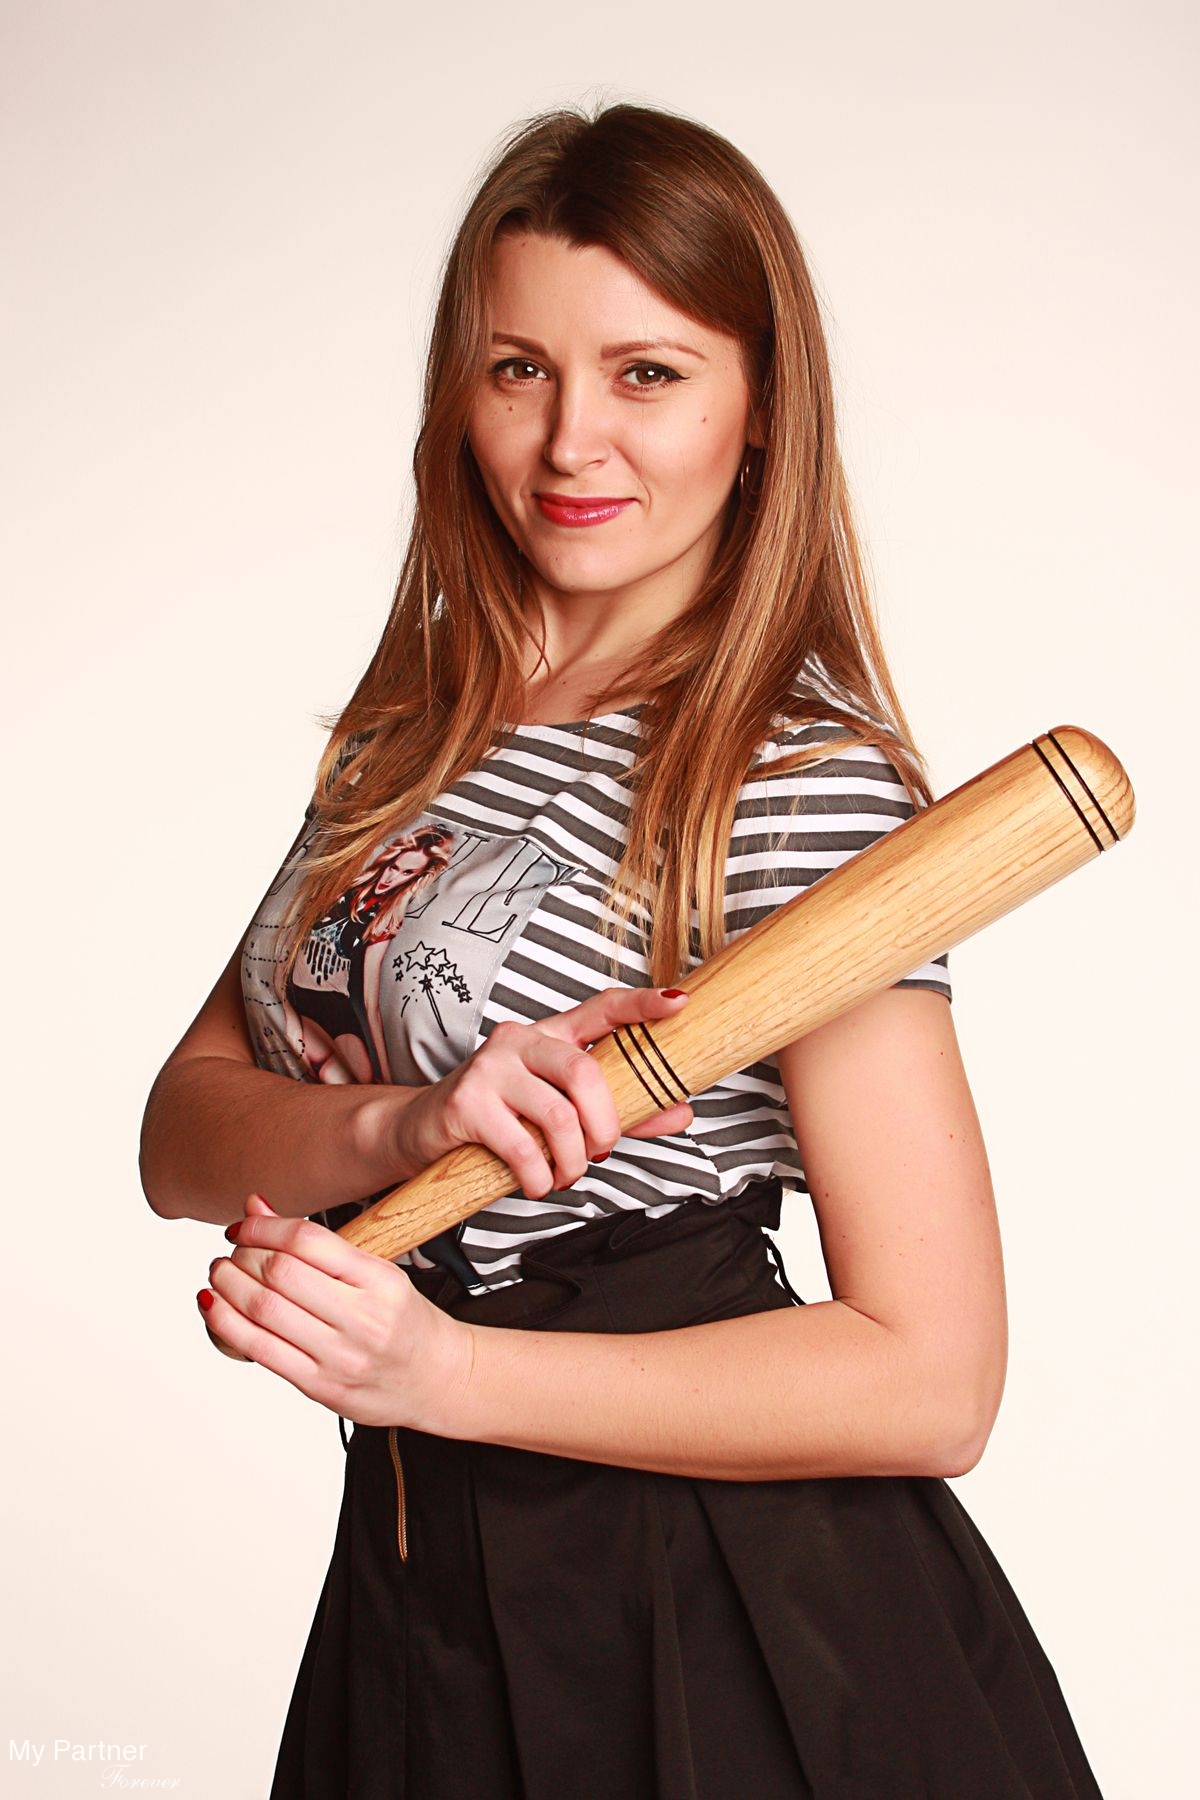 Dating Site to Meet Single Ukrainian Woman Olga from Kiev, Ukraine